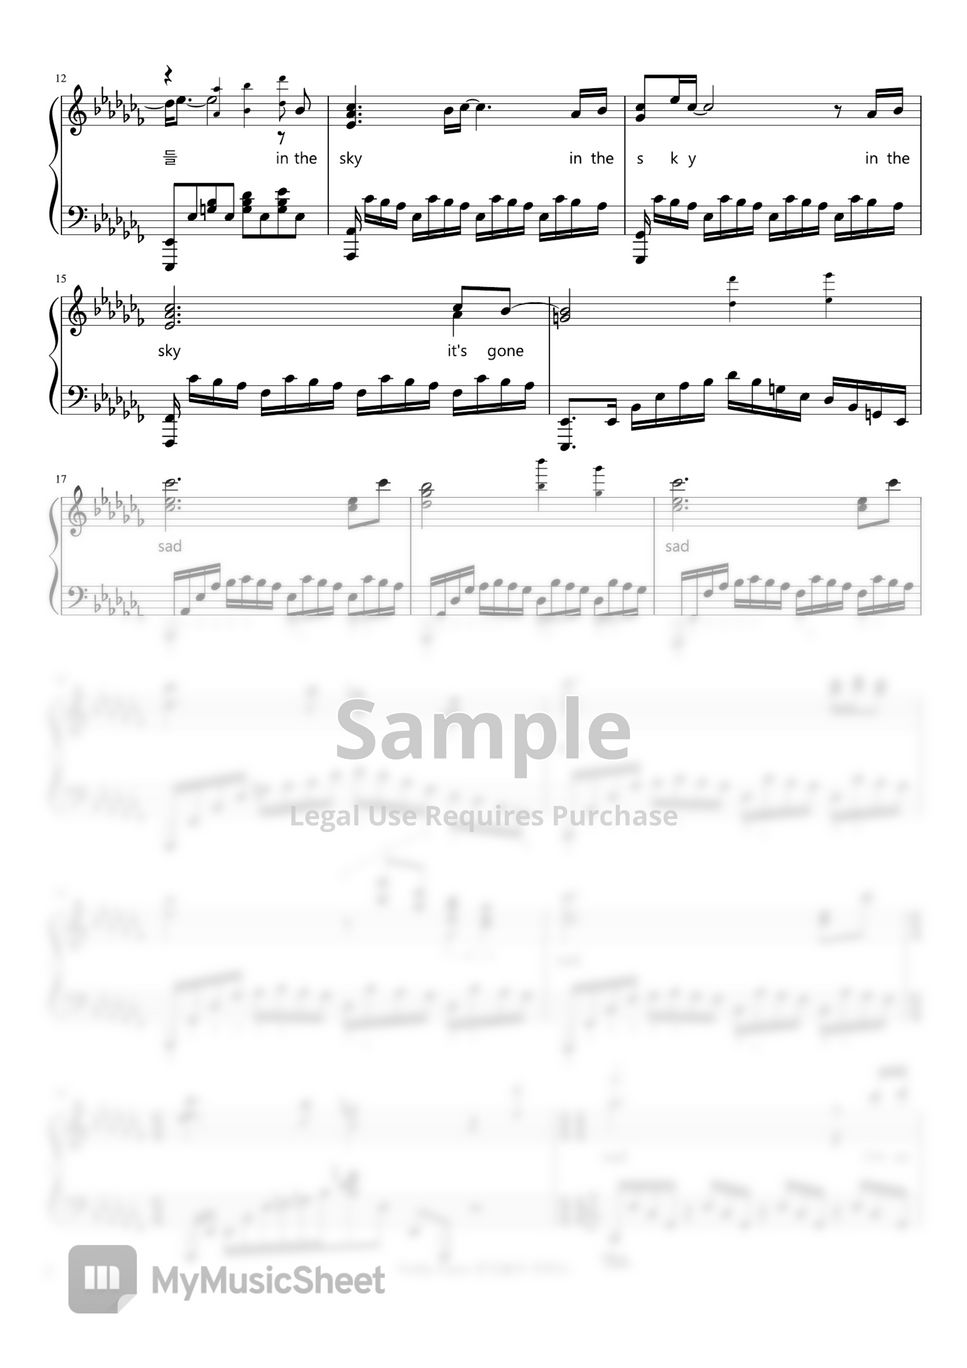 손승연(Sonnet Son) - Sad (부부의세계 ost part 3) by Firefly Piano